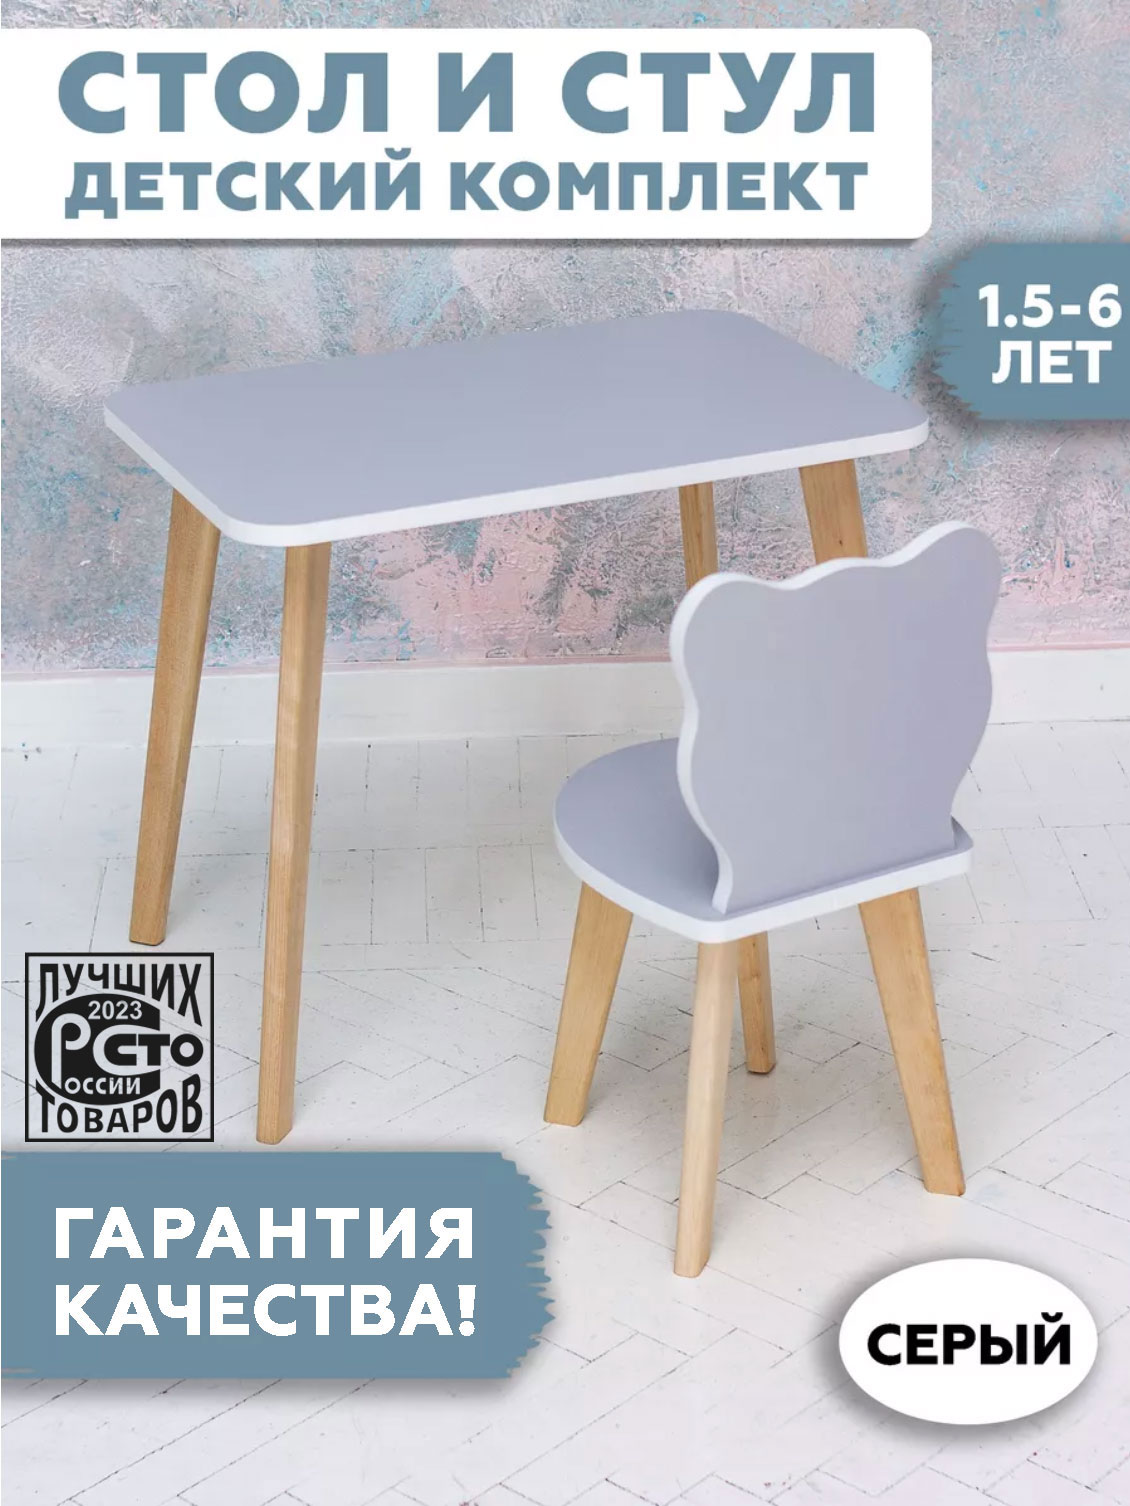 Комплект детской мебели RuLes прямоугольный столик и стульчик мишка, серый 12620